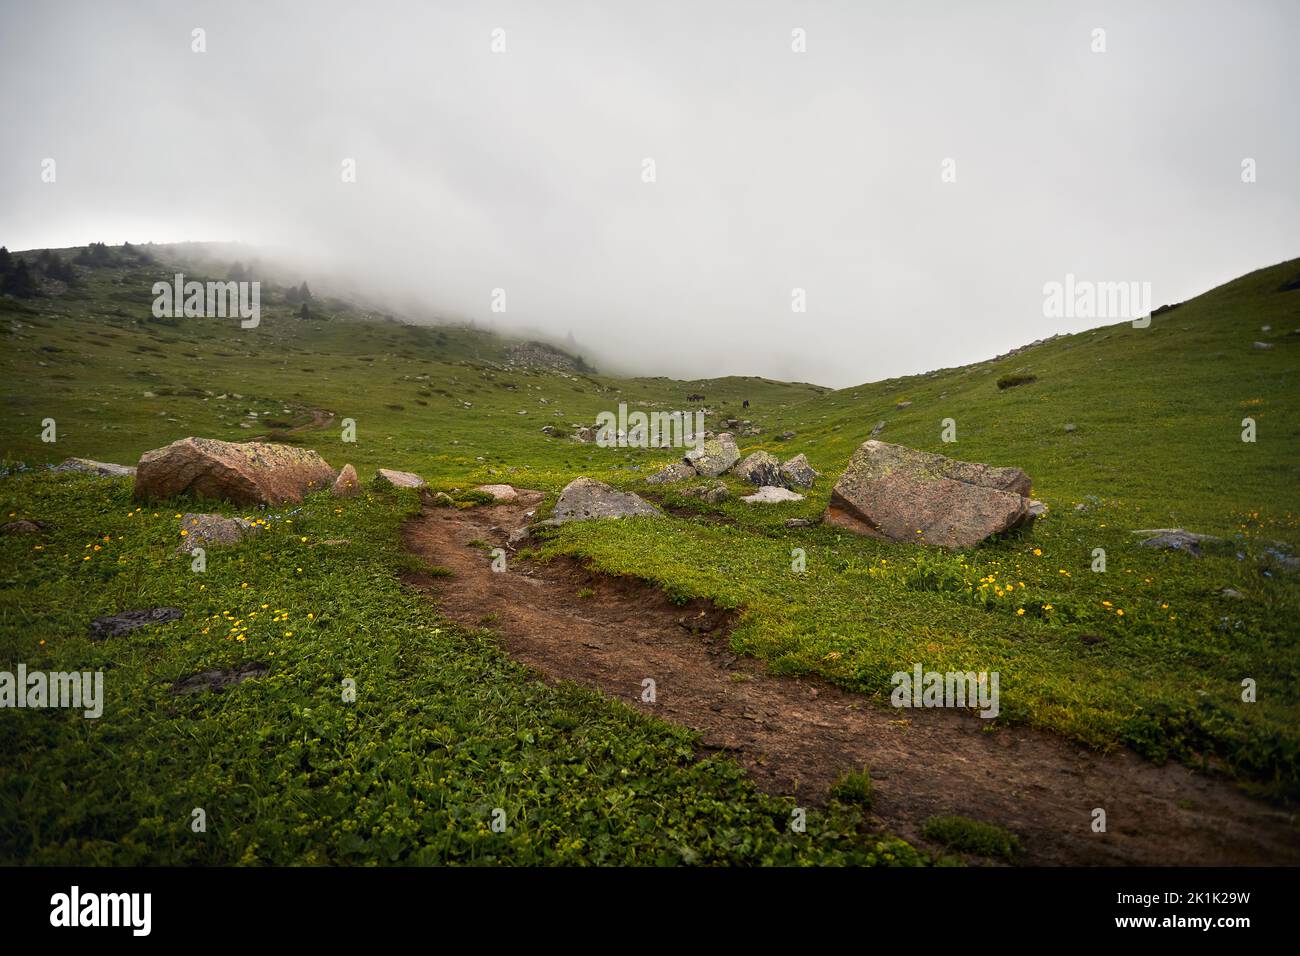 Carretera rural en un hermoso paisaje en las verdes colinas en el valle de montaña y exuberante prado en el cielo oscuro de la tormenta y la lluvia en Almaty, Kazajstán Foto de stock